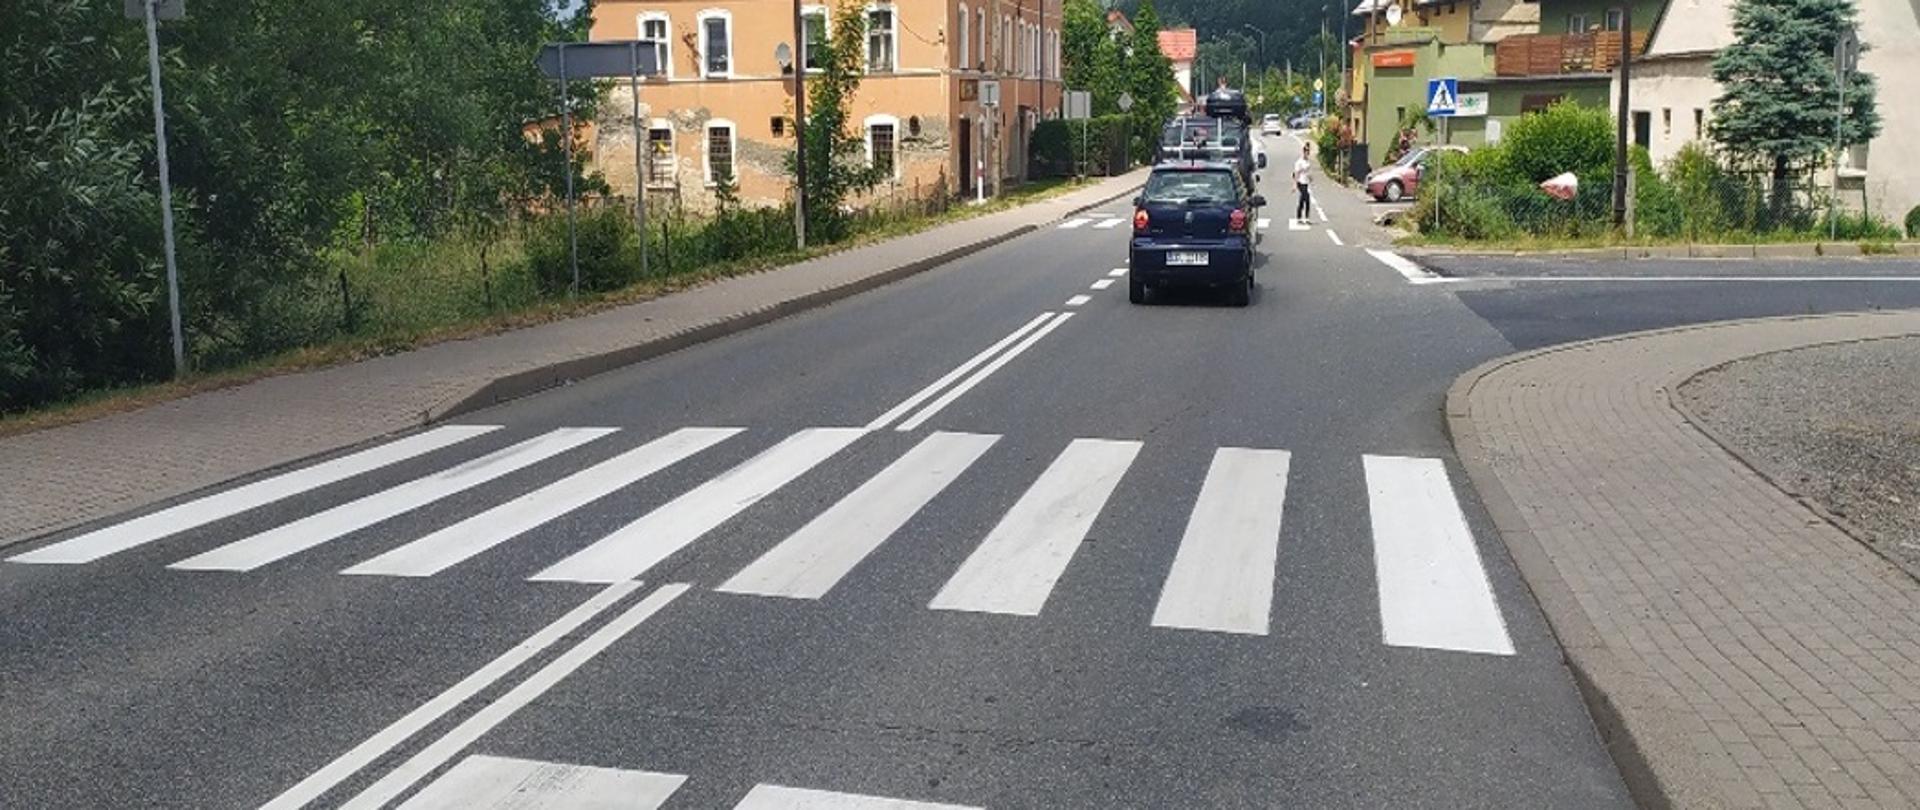 Na zdjęciu widać przejście dla pieszych w Żelaźnie w ciągu DK33